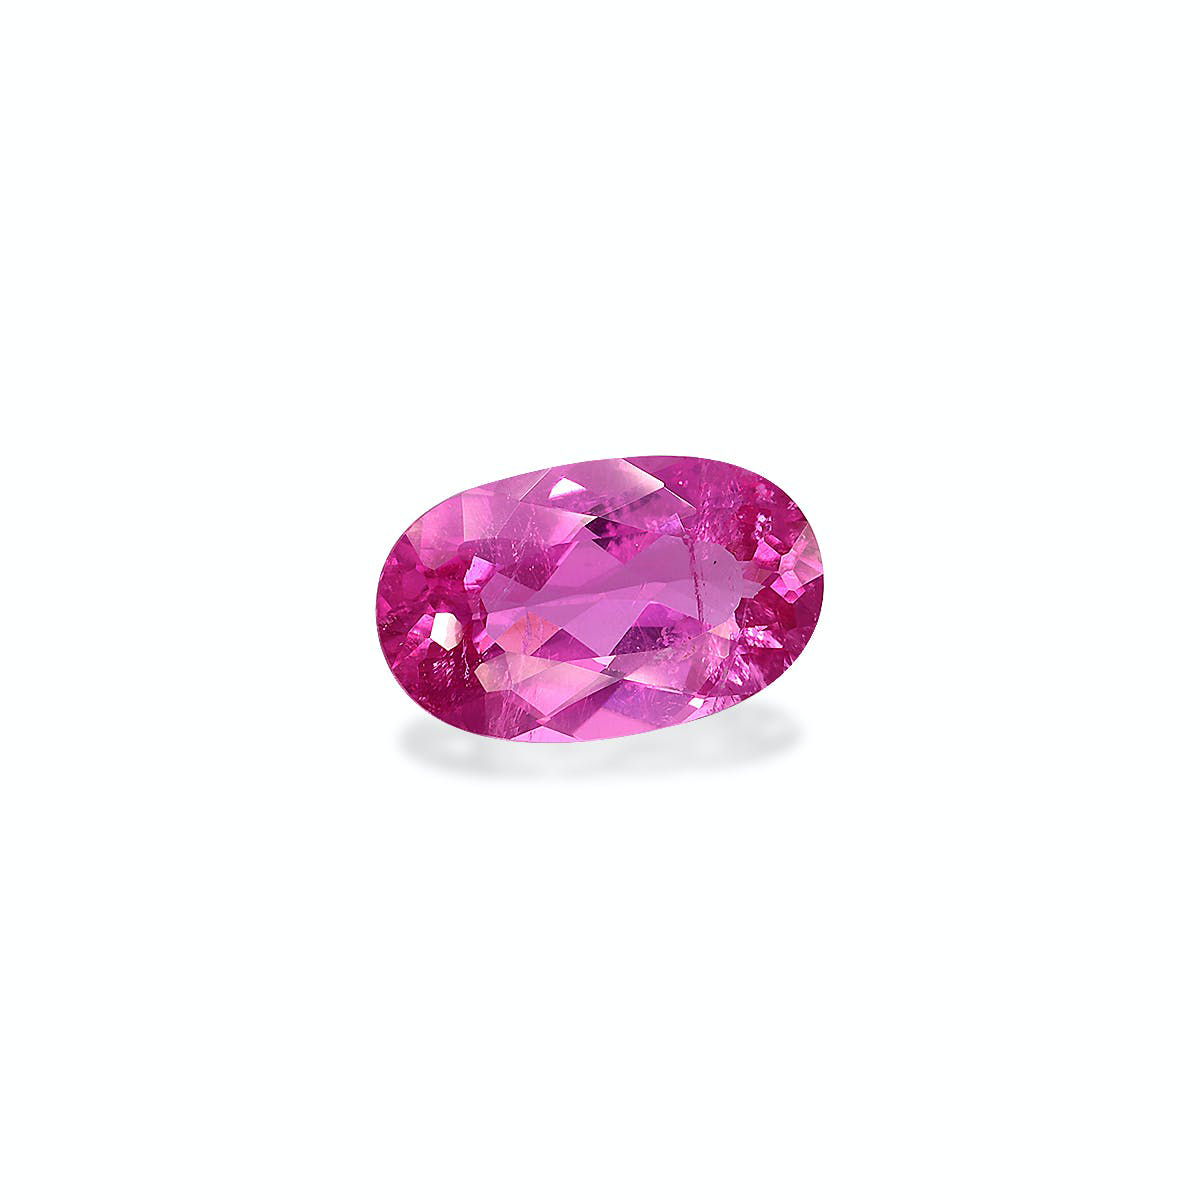 Picture of Fuscia Pink Rubellite Tourmaline 4.81ct (RL1237)